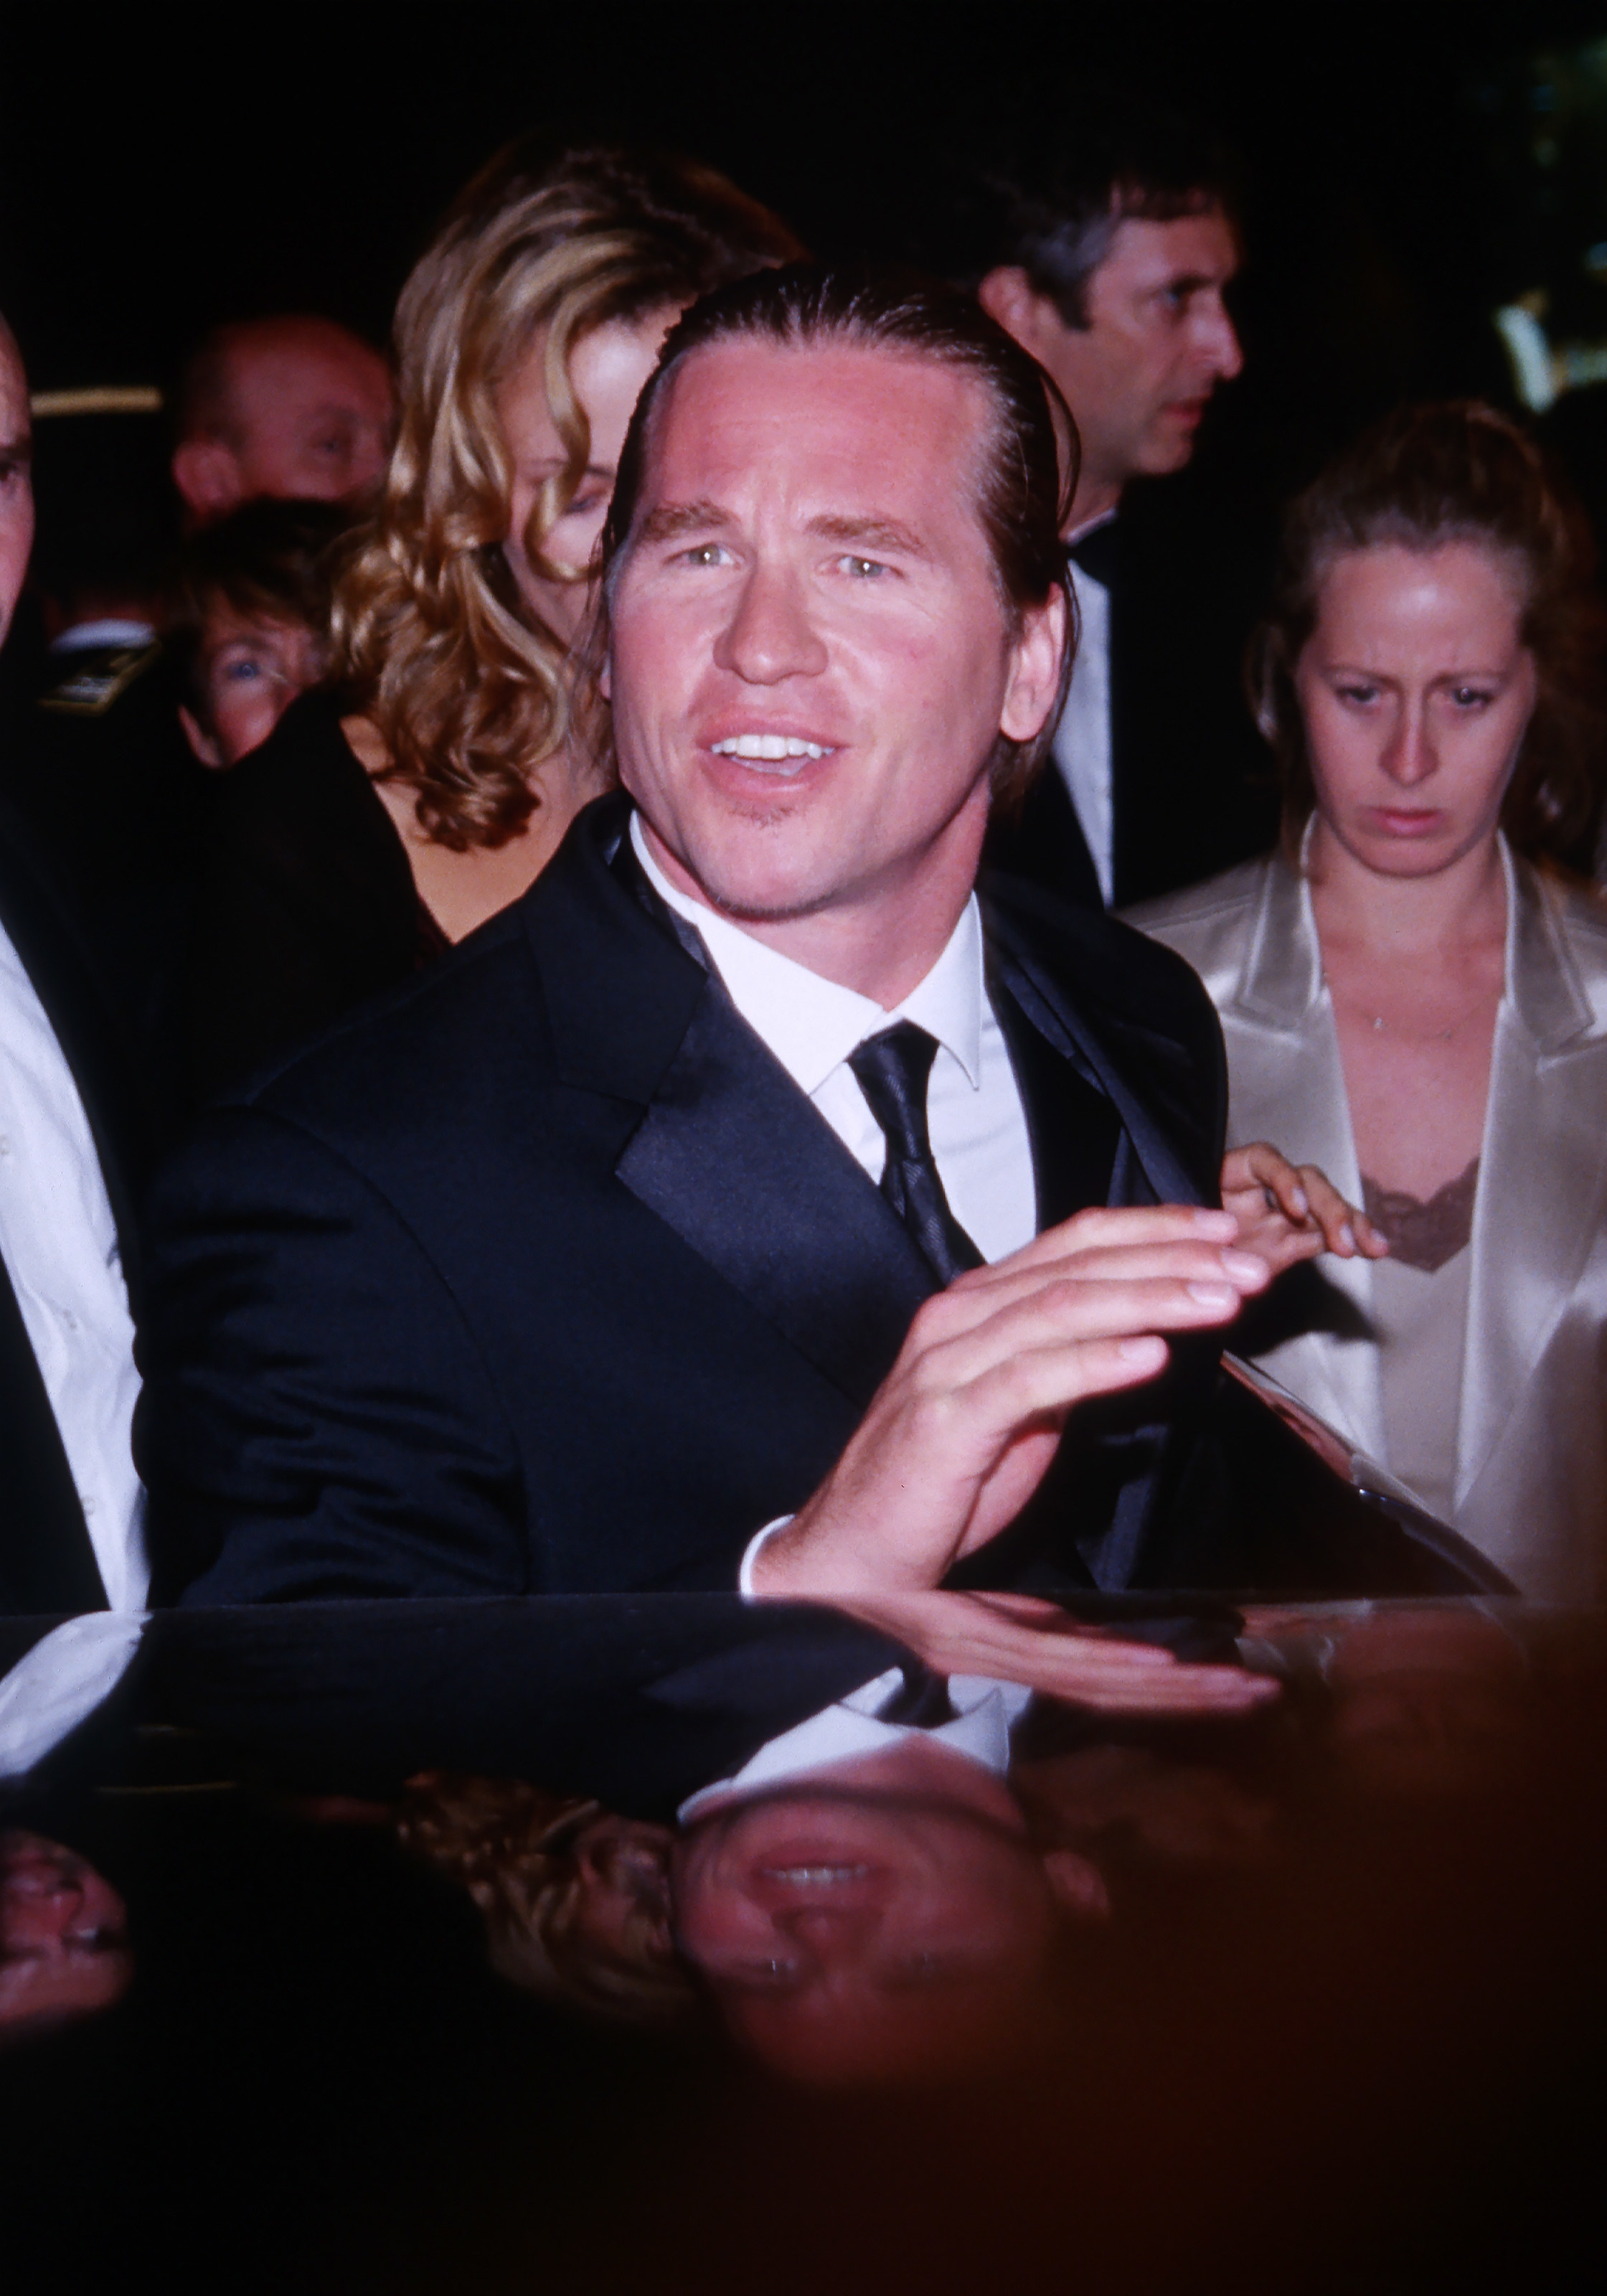 Val Kilmer at Cannes Film Festival in 1999